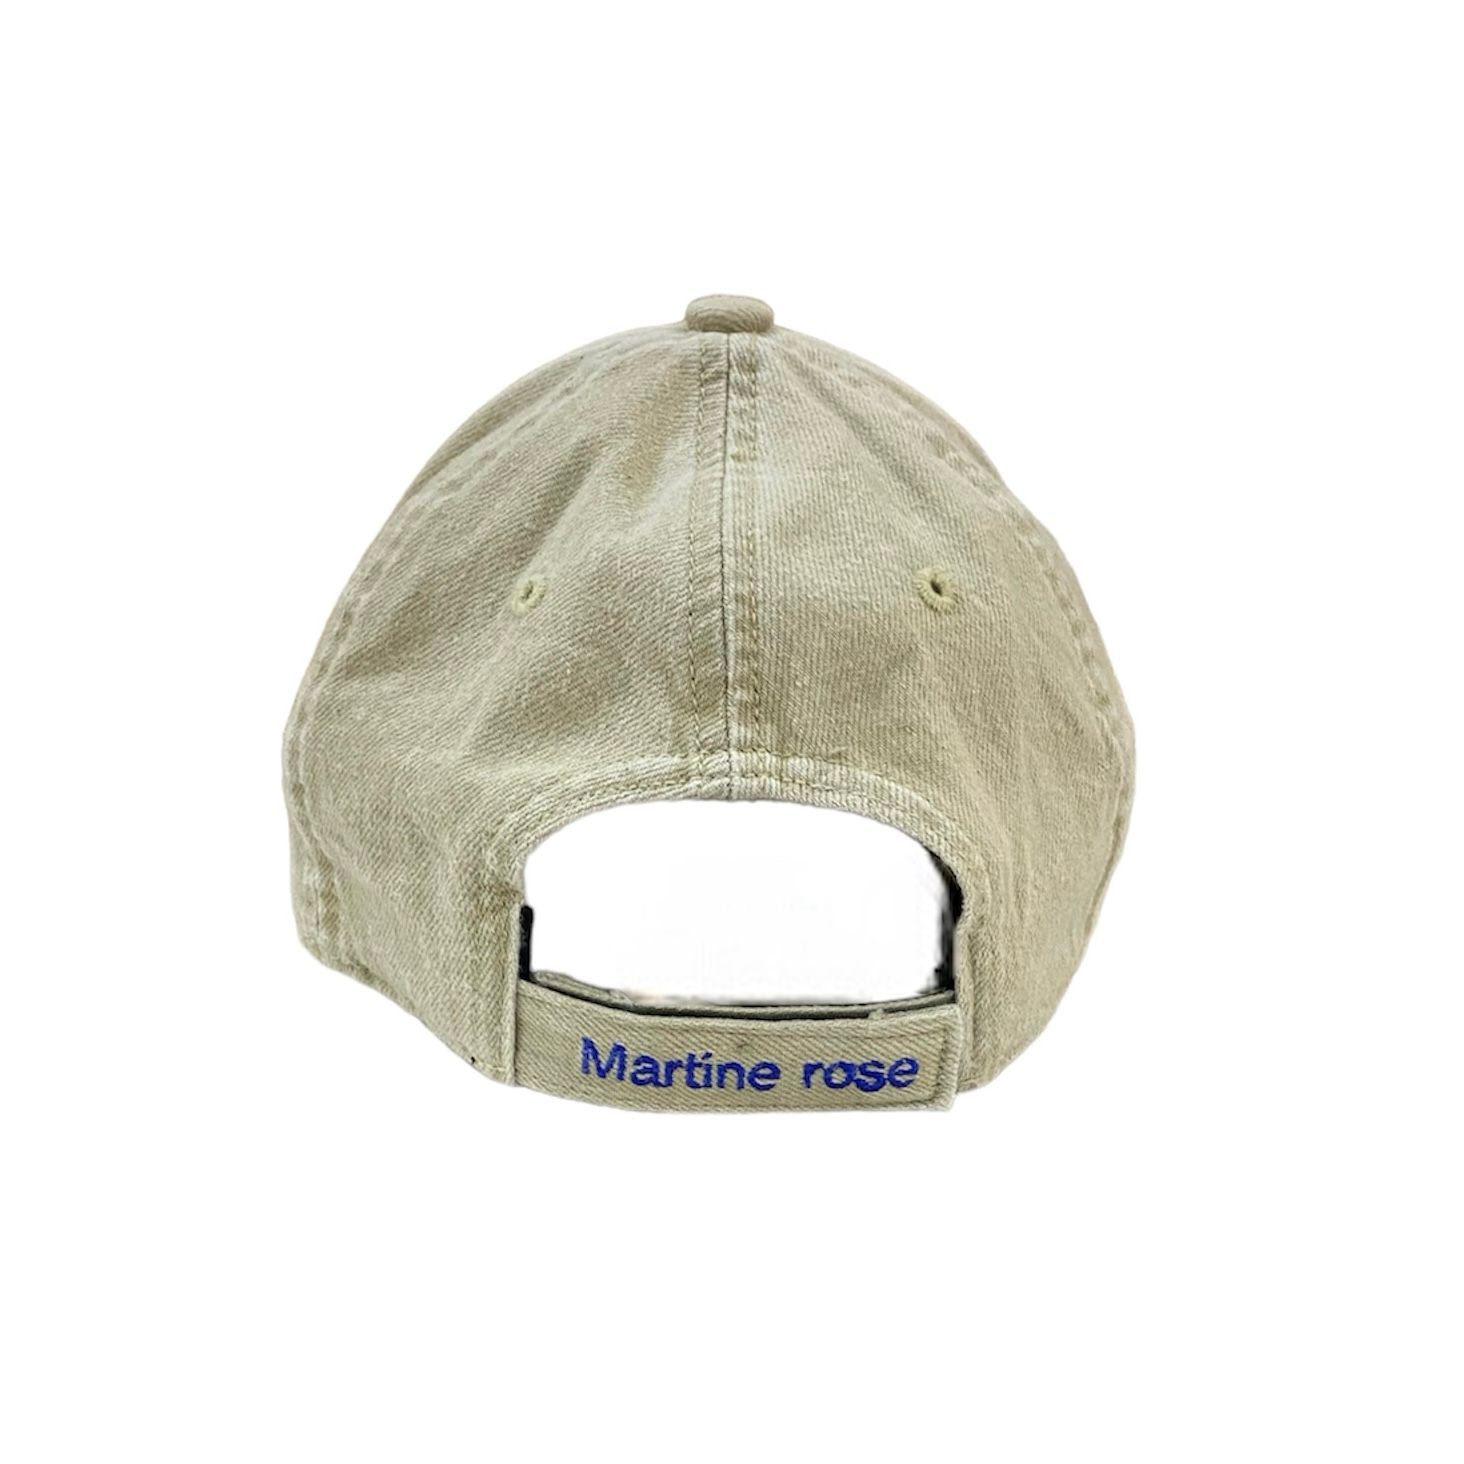 MARTINE ROSE CUT PEAK CAP 24ss キャップ - 帽子